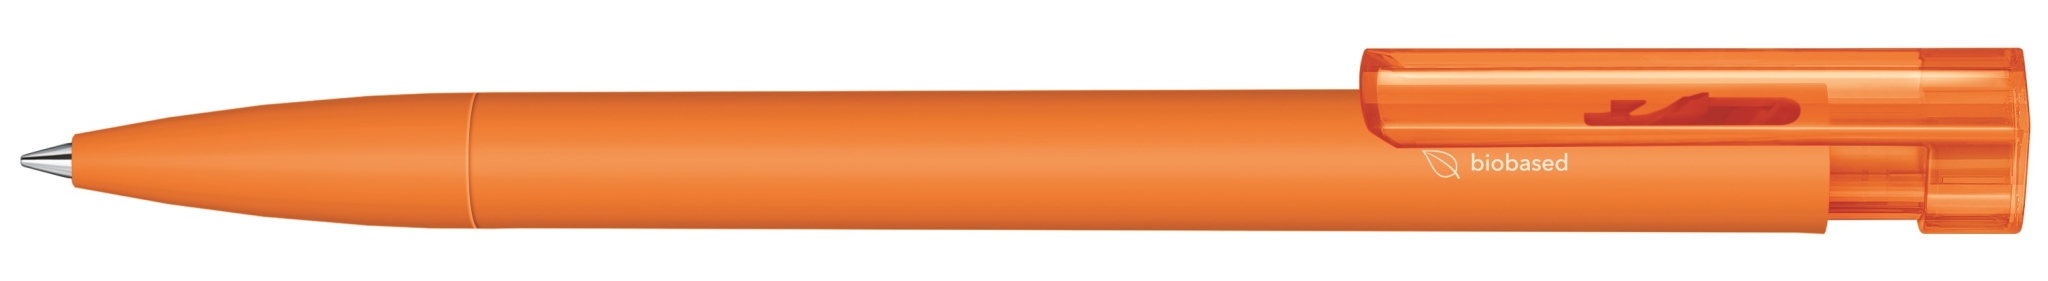  3310 ШР Liberty Bio matt clip clear  оранжевый 021, оранжевый, пластик